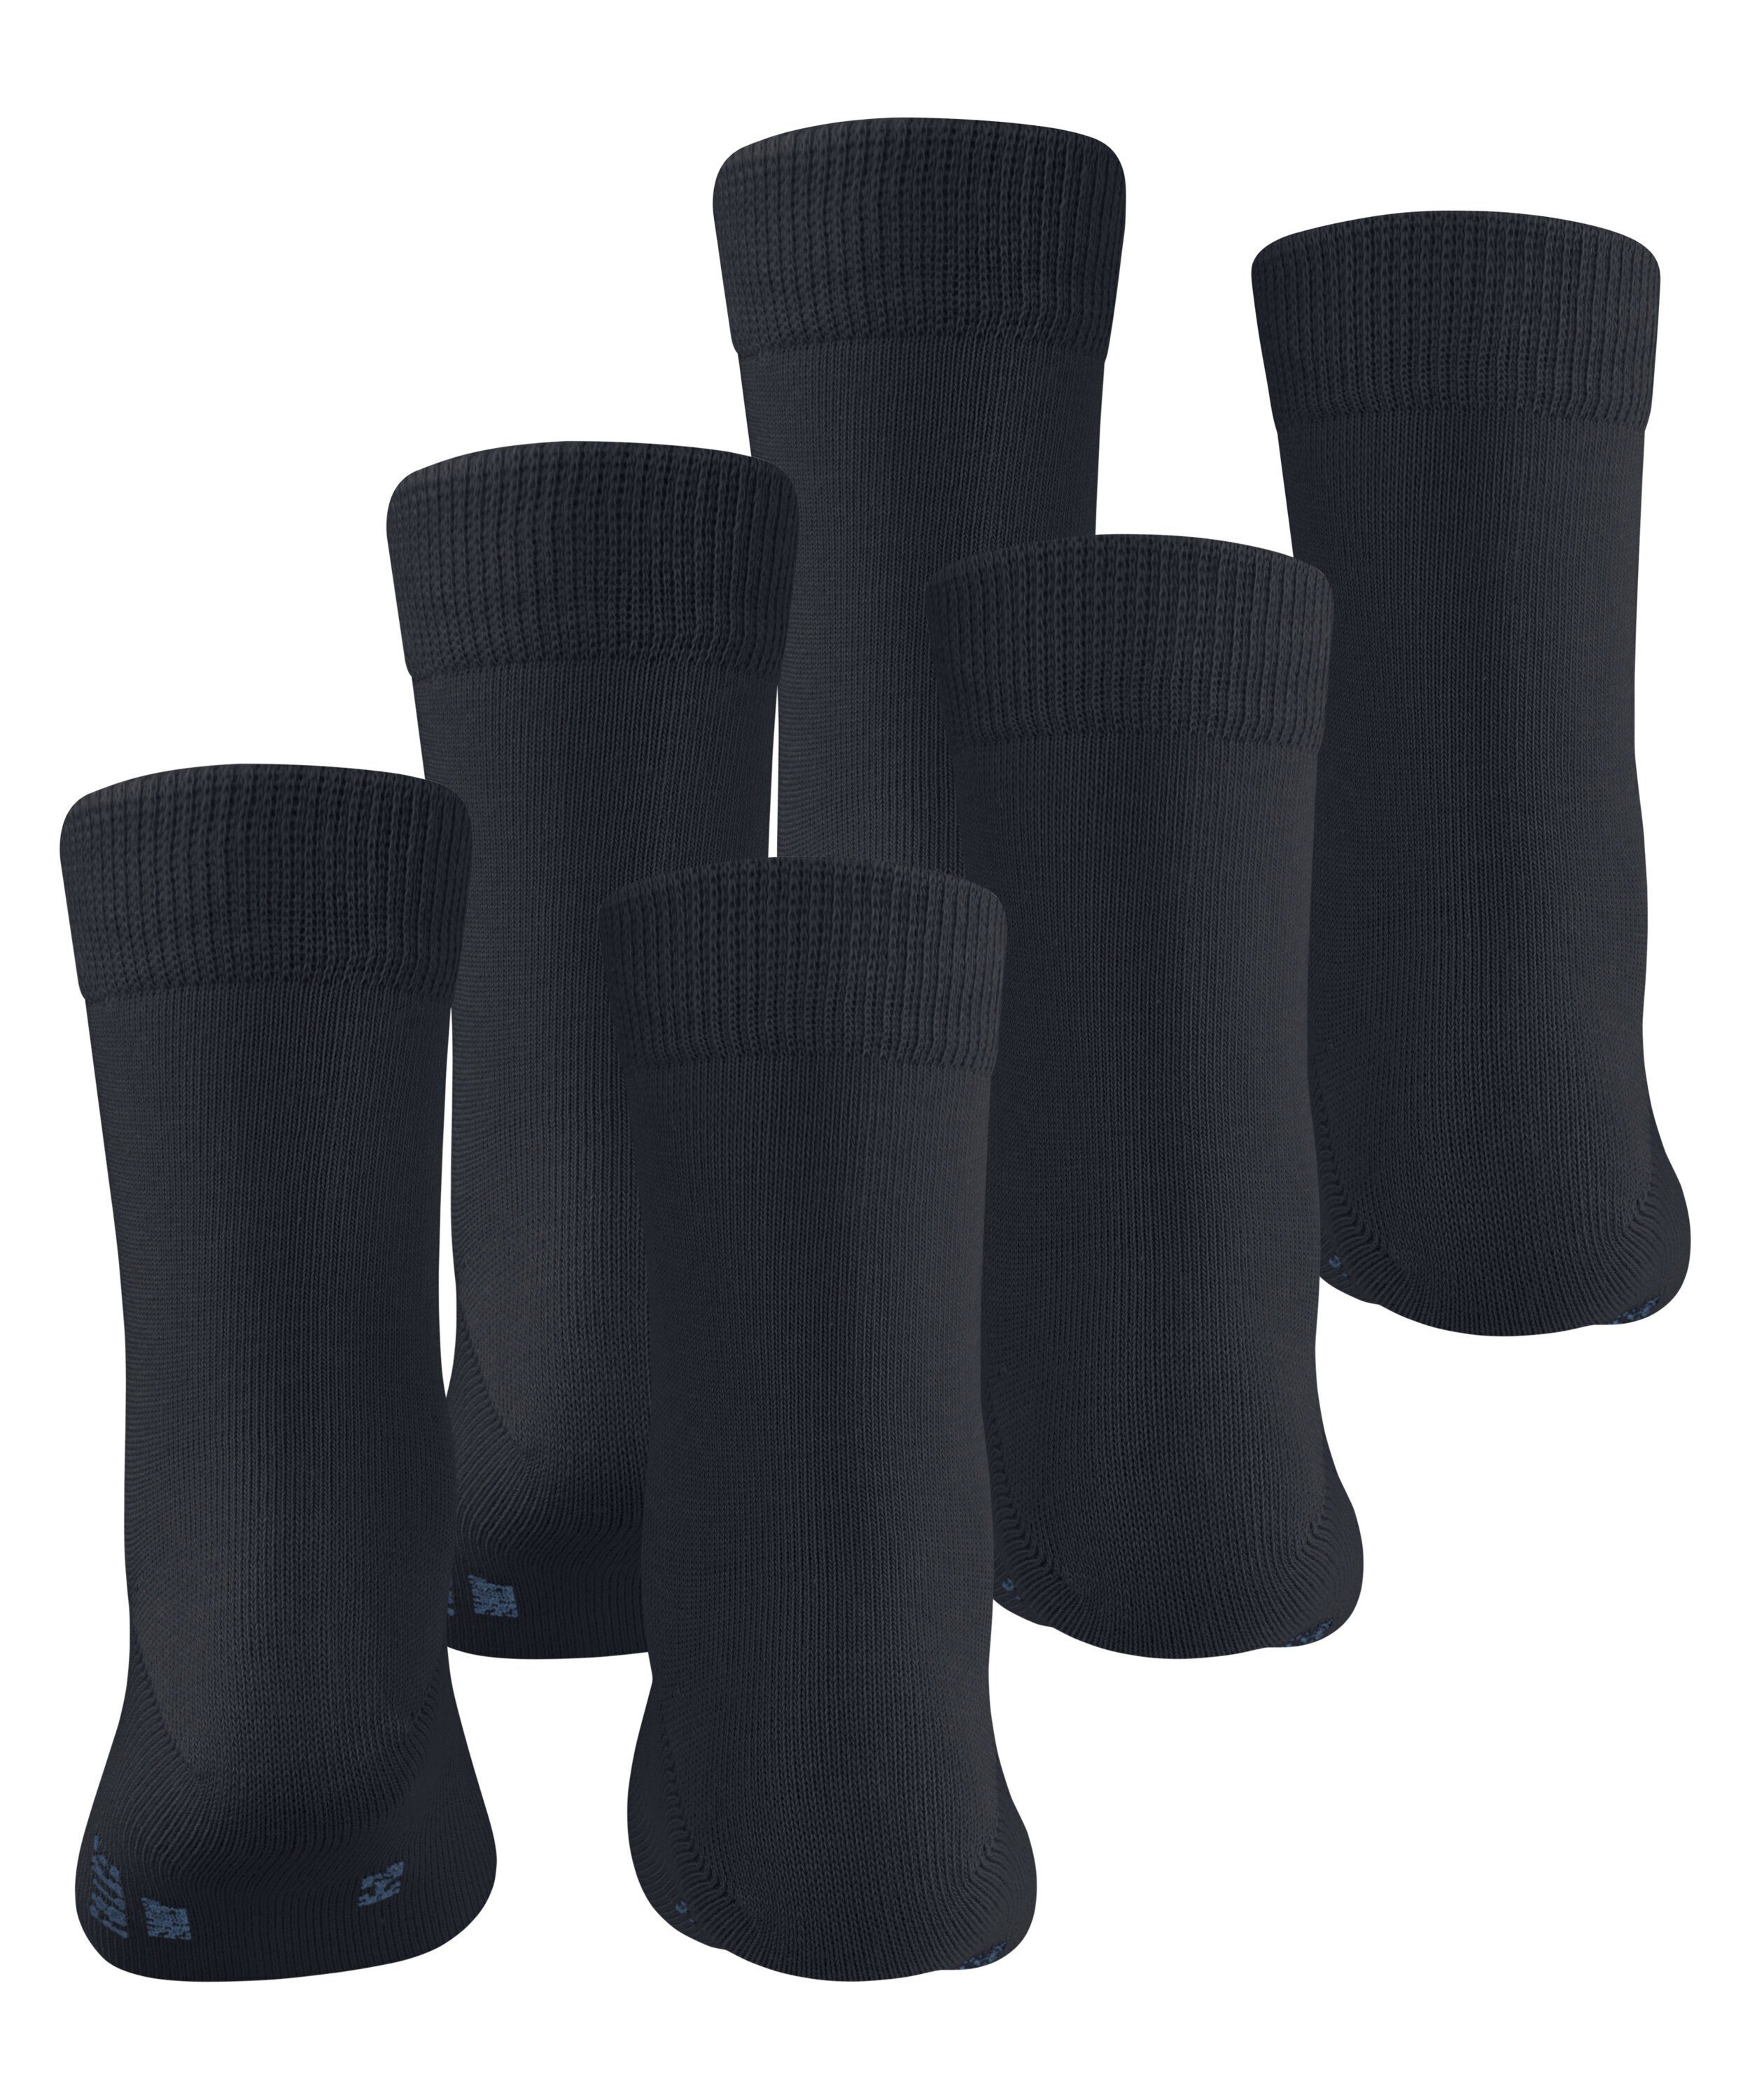 FALKE Socken darkmarine 3-Pack (6170) Family (3-Paar)